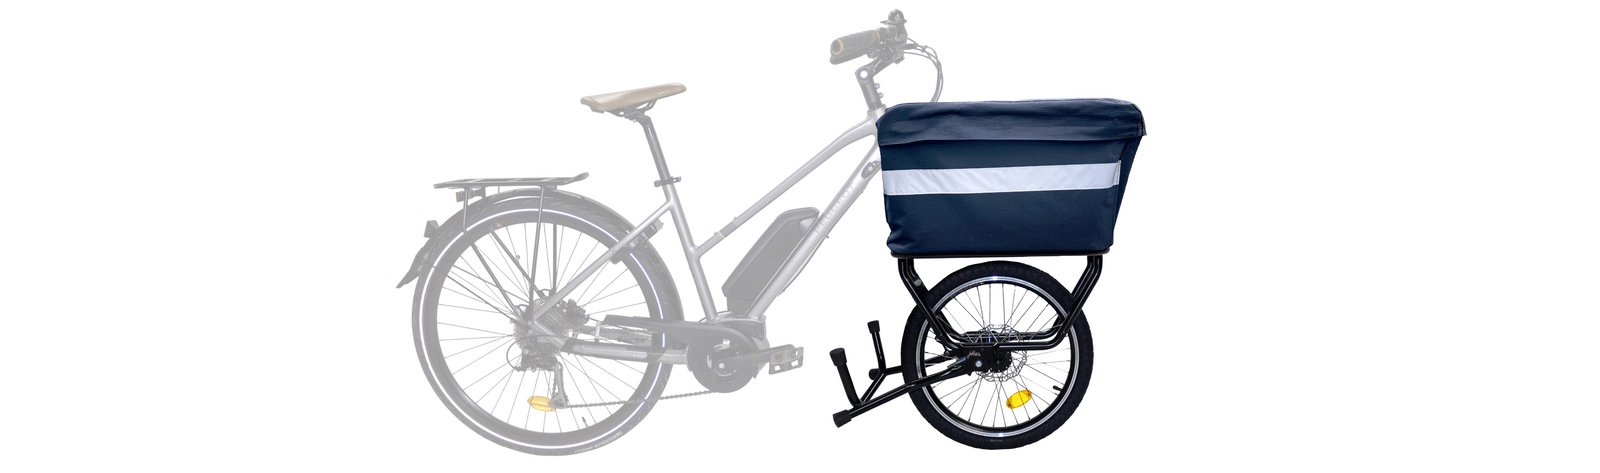 Caractéristiques techniques d'un vélo-cargo compact équipé du JoKer Mini et du Soft Bag